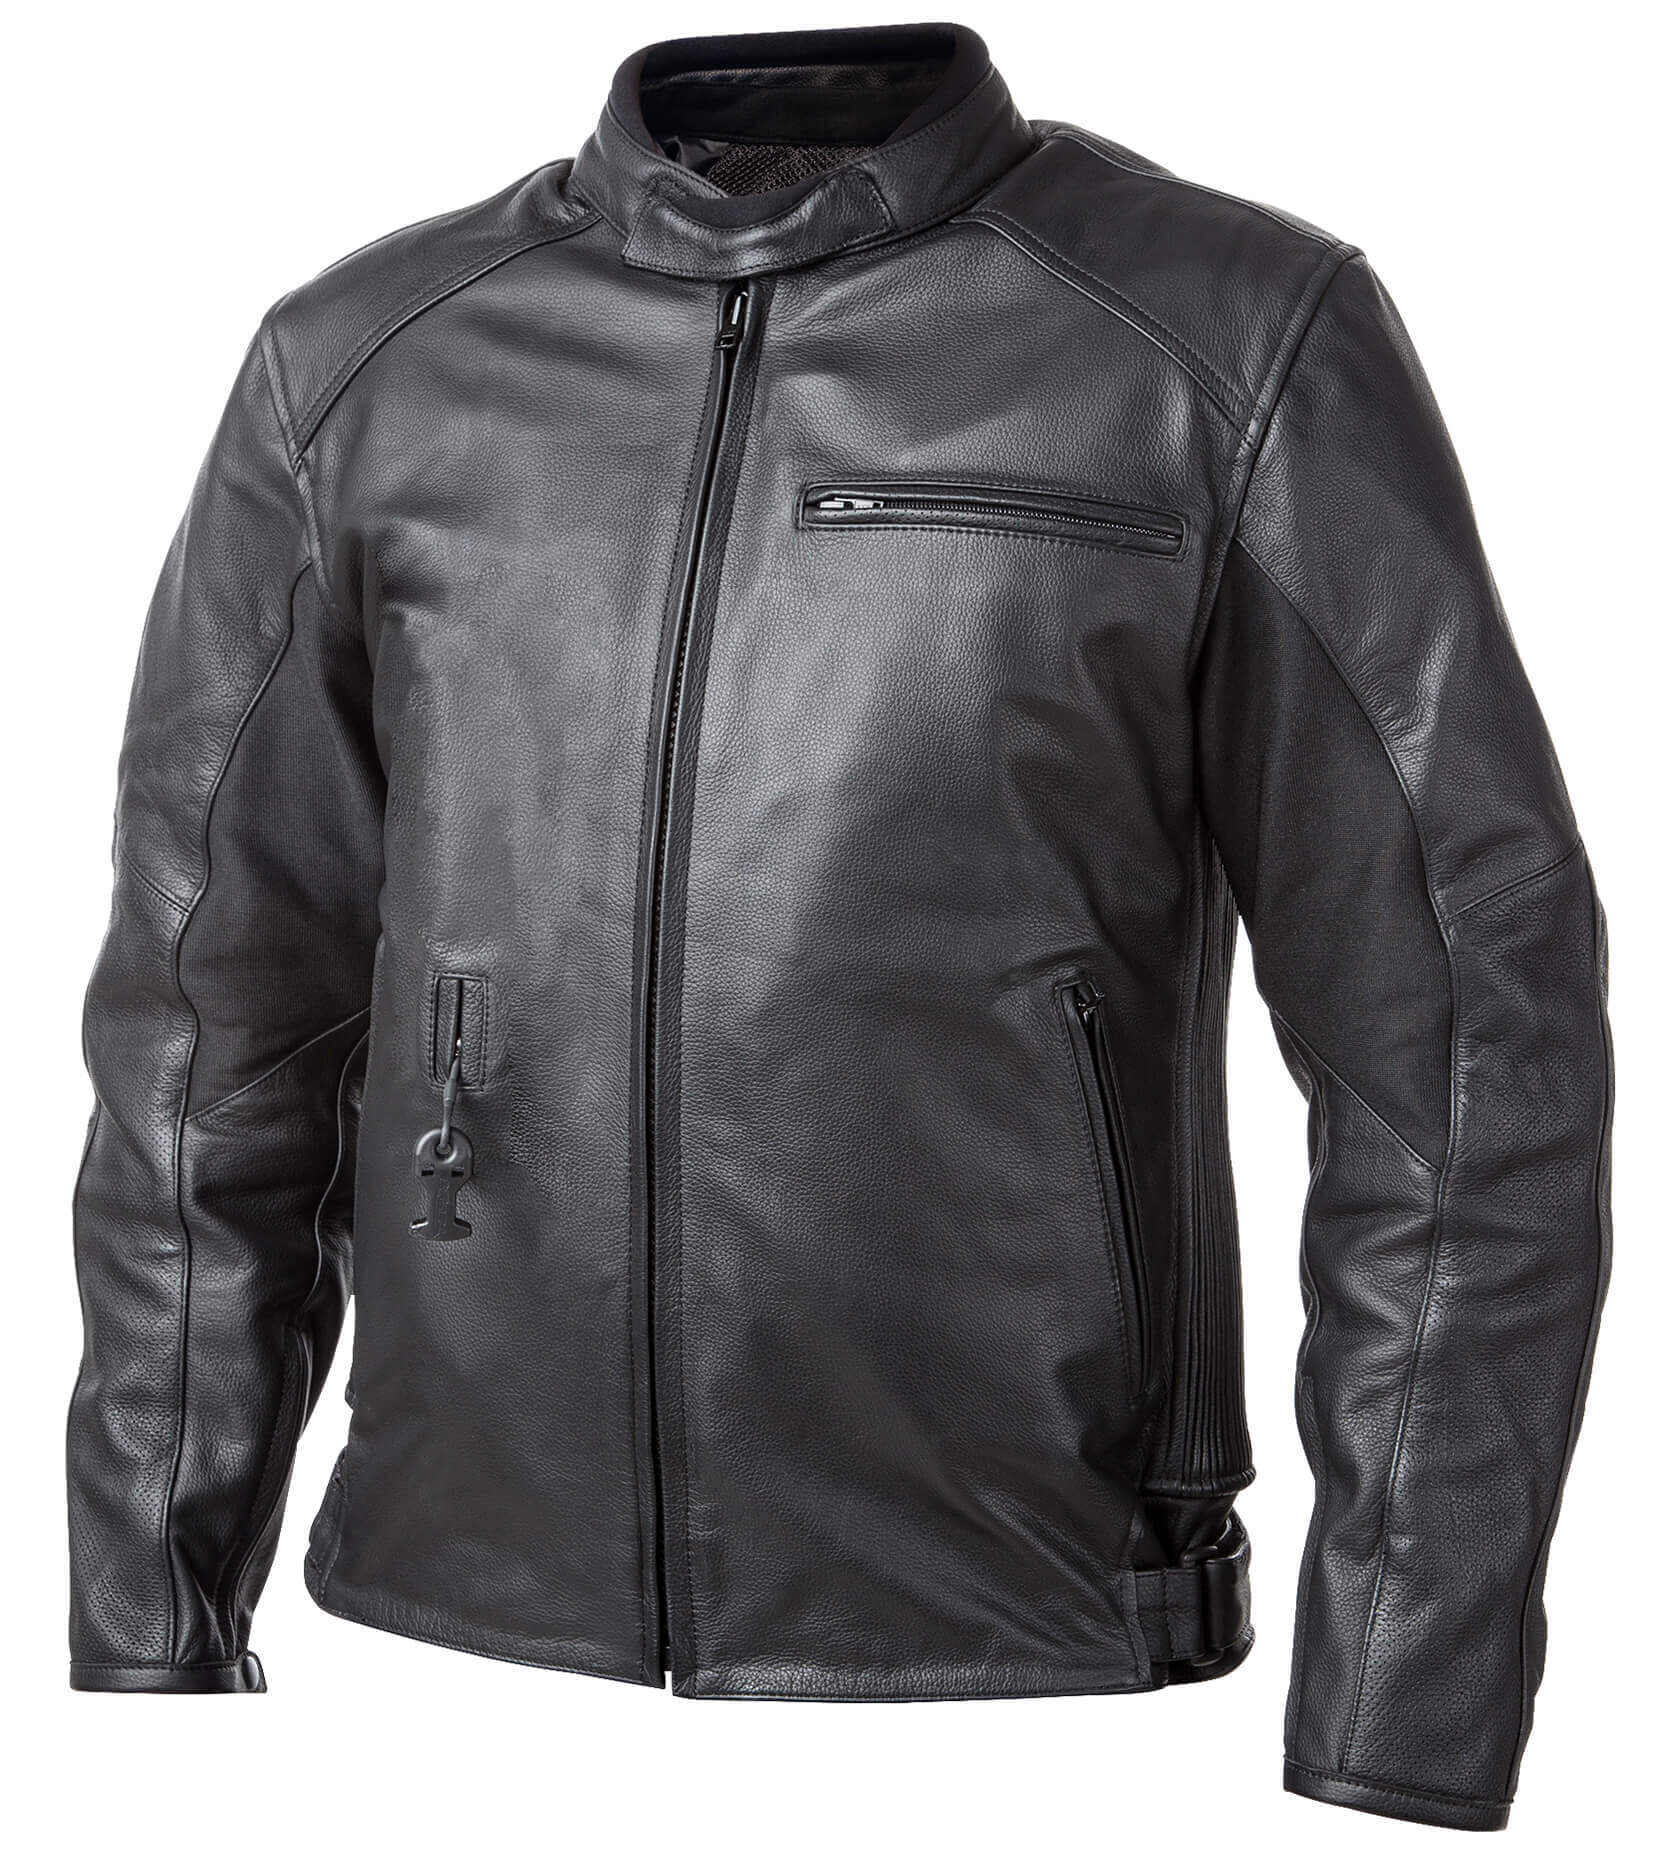 Airbag kabát Helite Roadster Vintage fekete bőr  3XL  Fekete